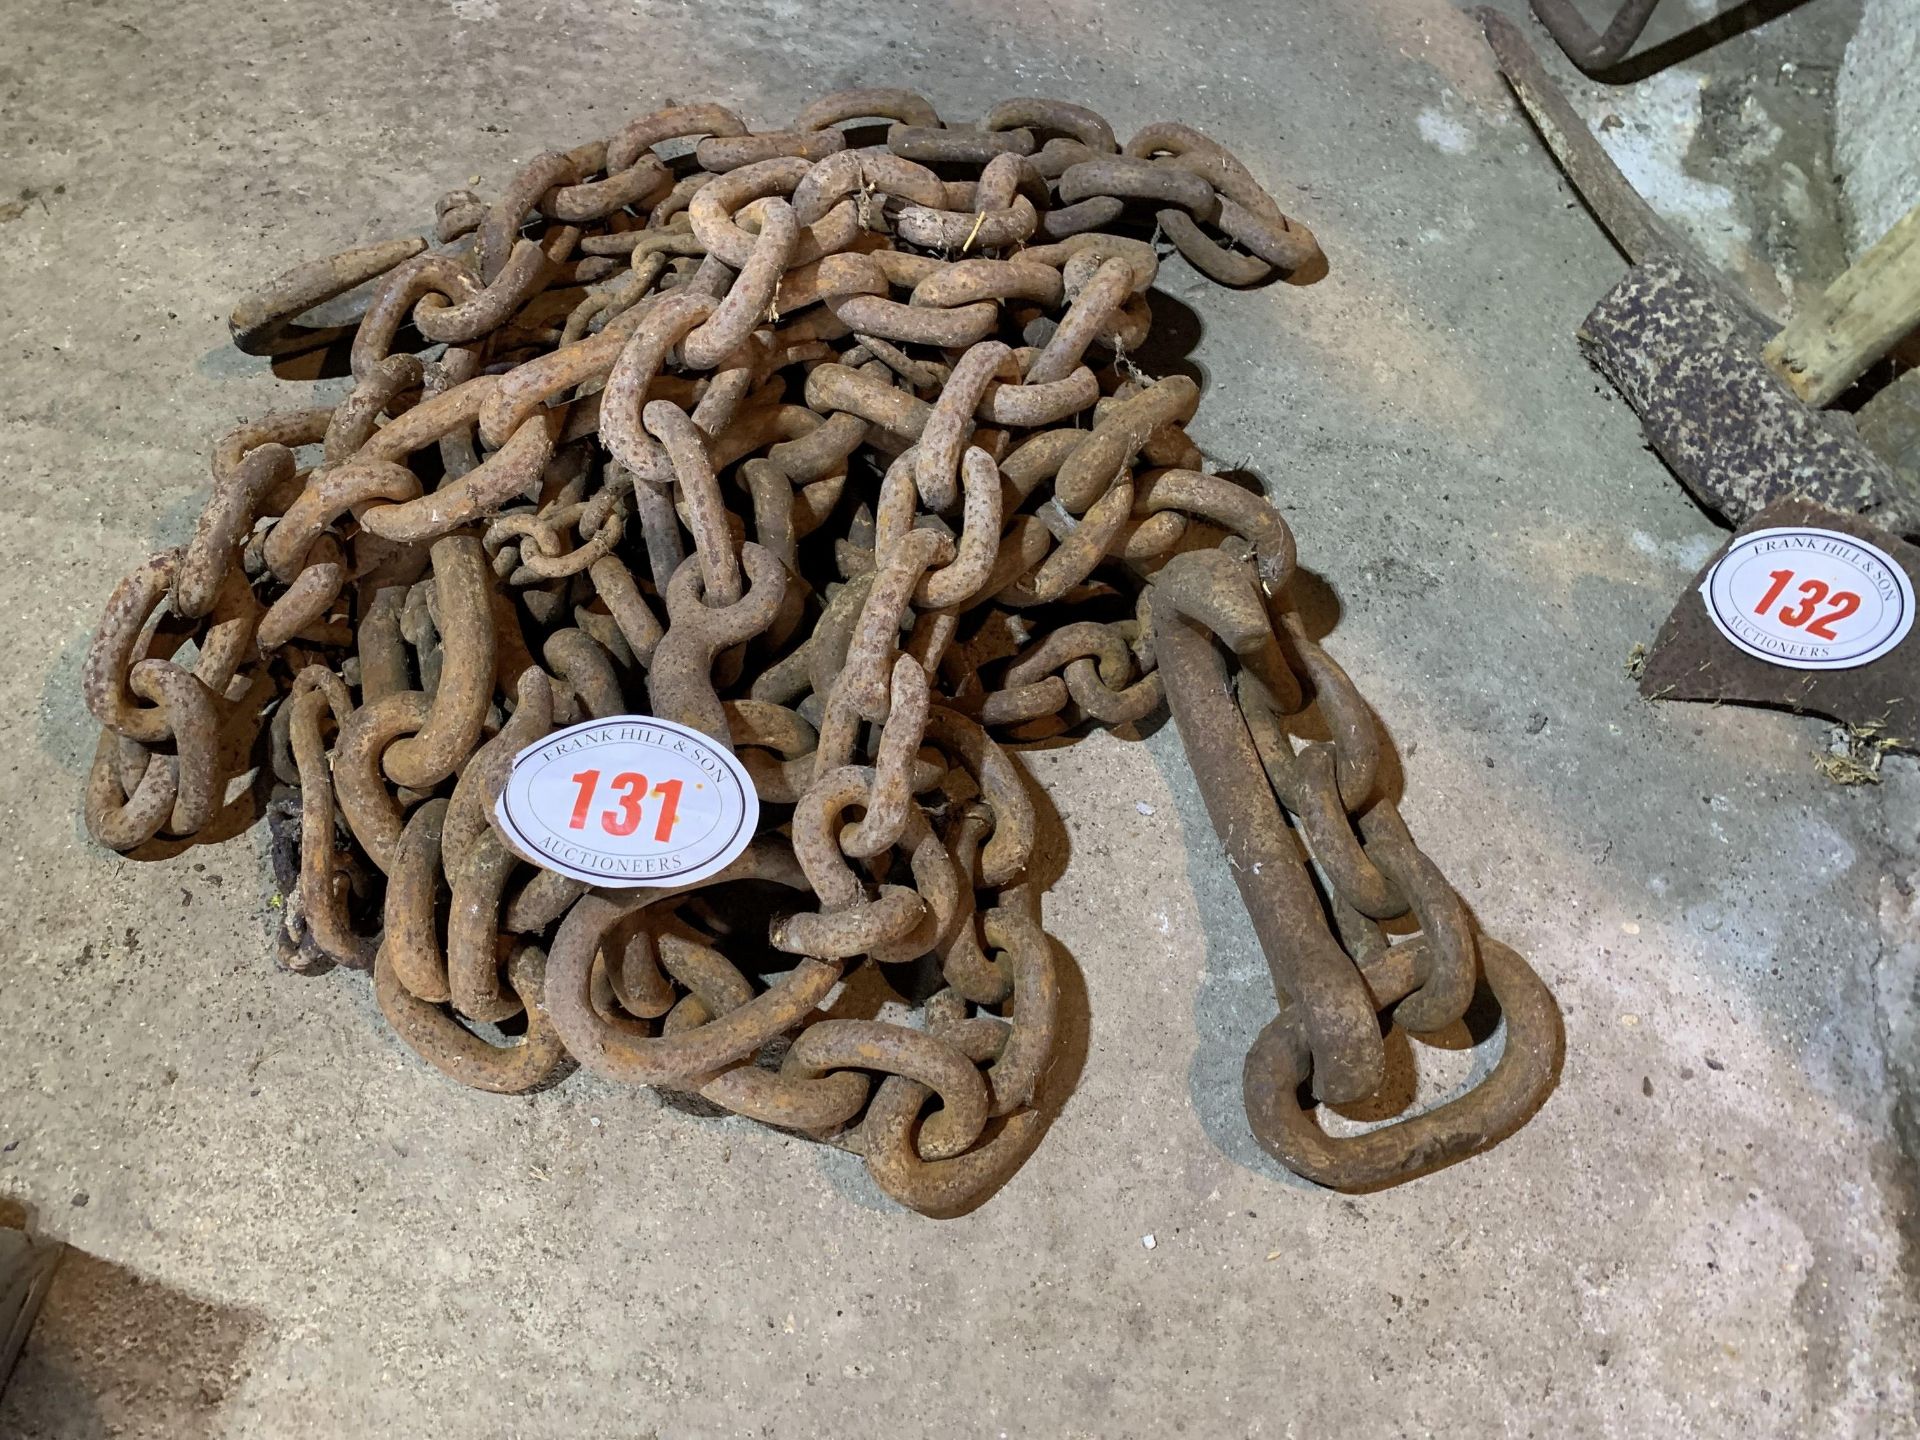 Heap of chain